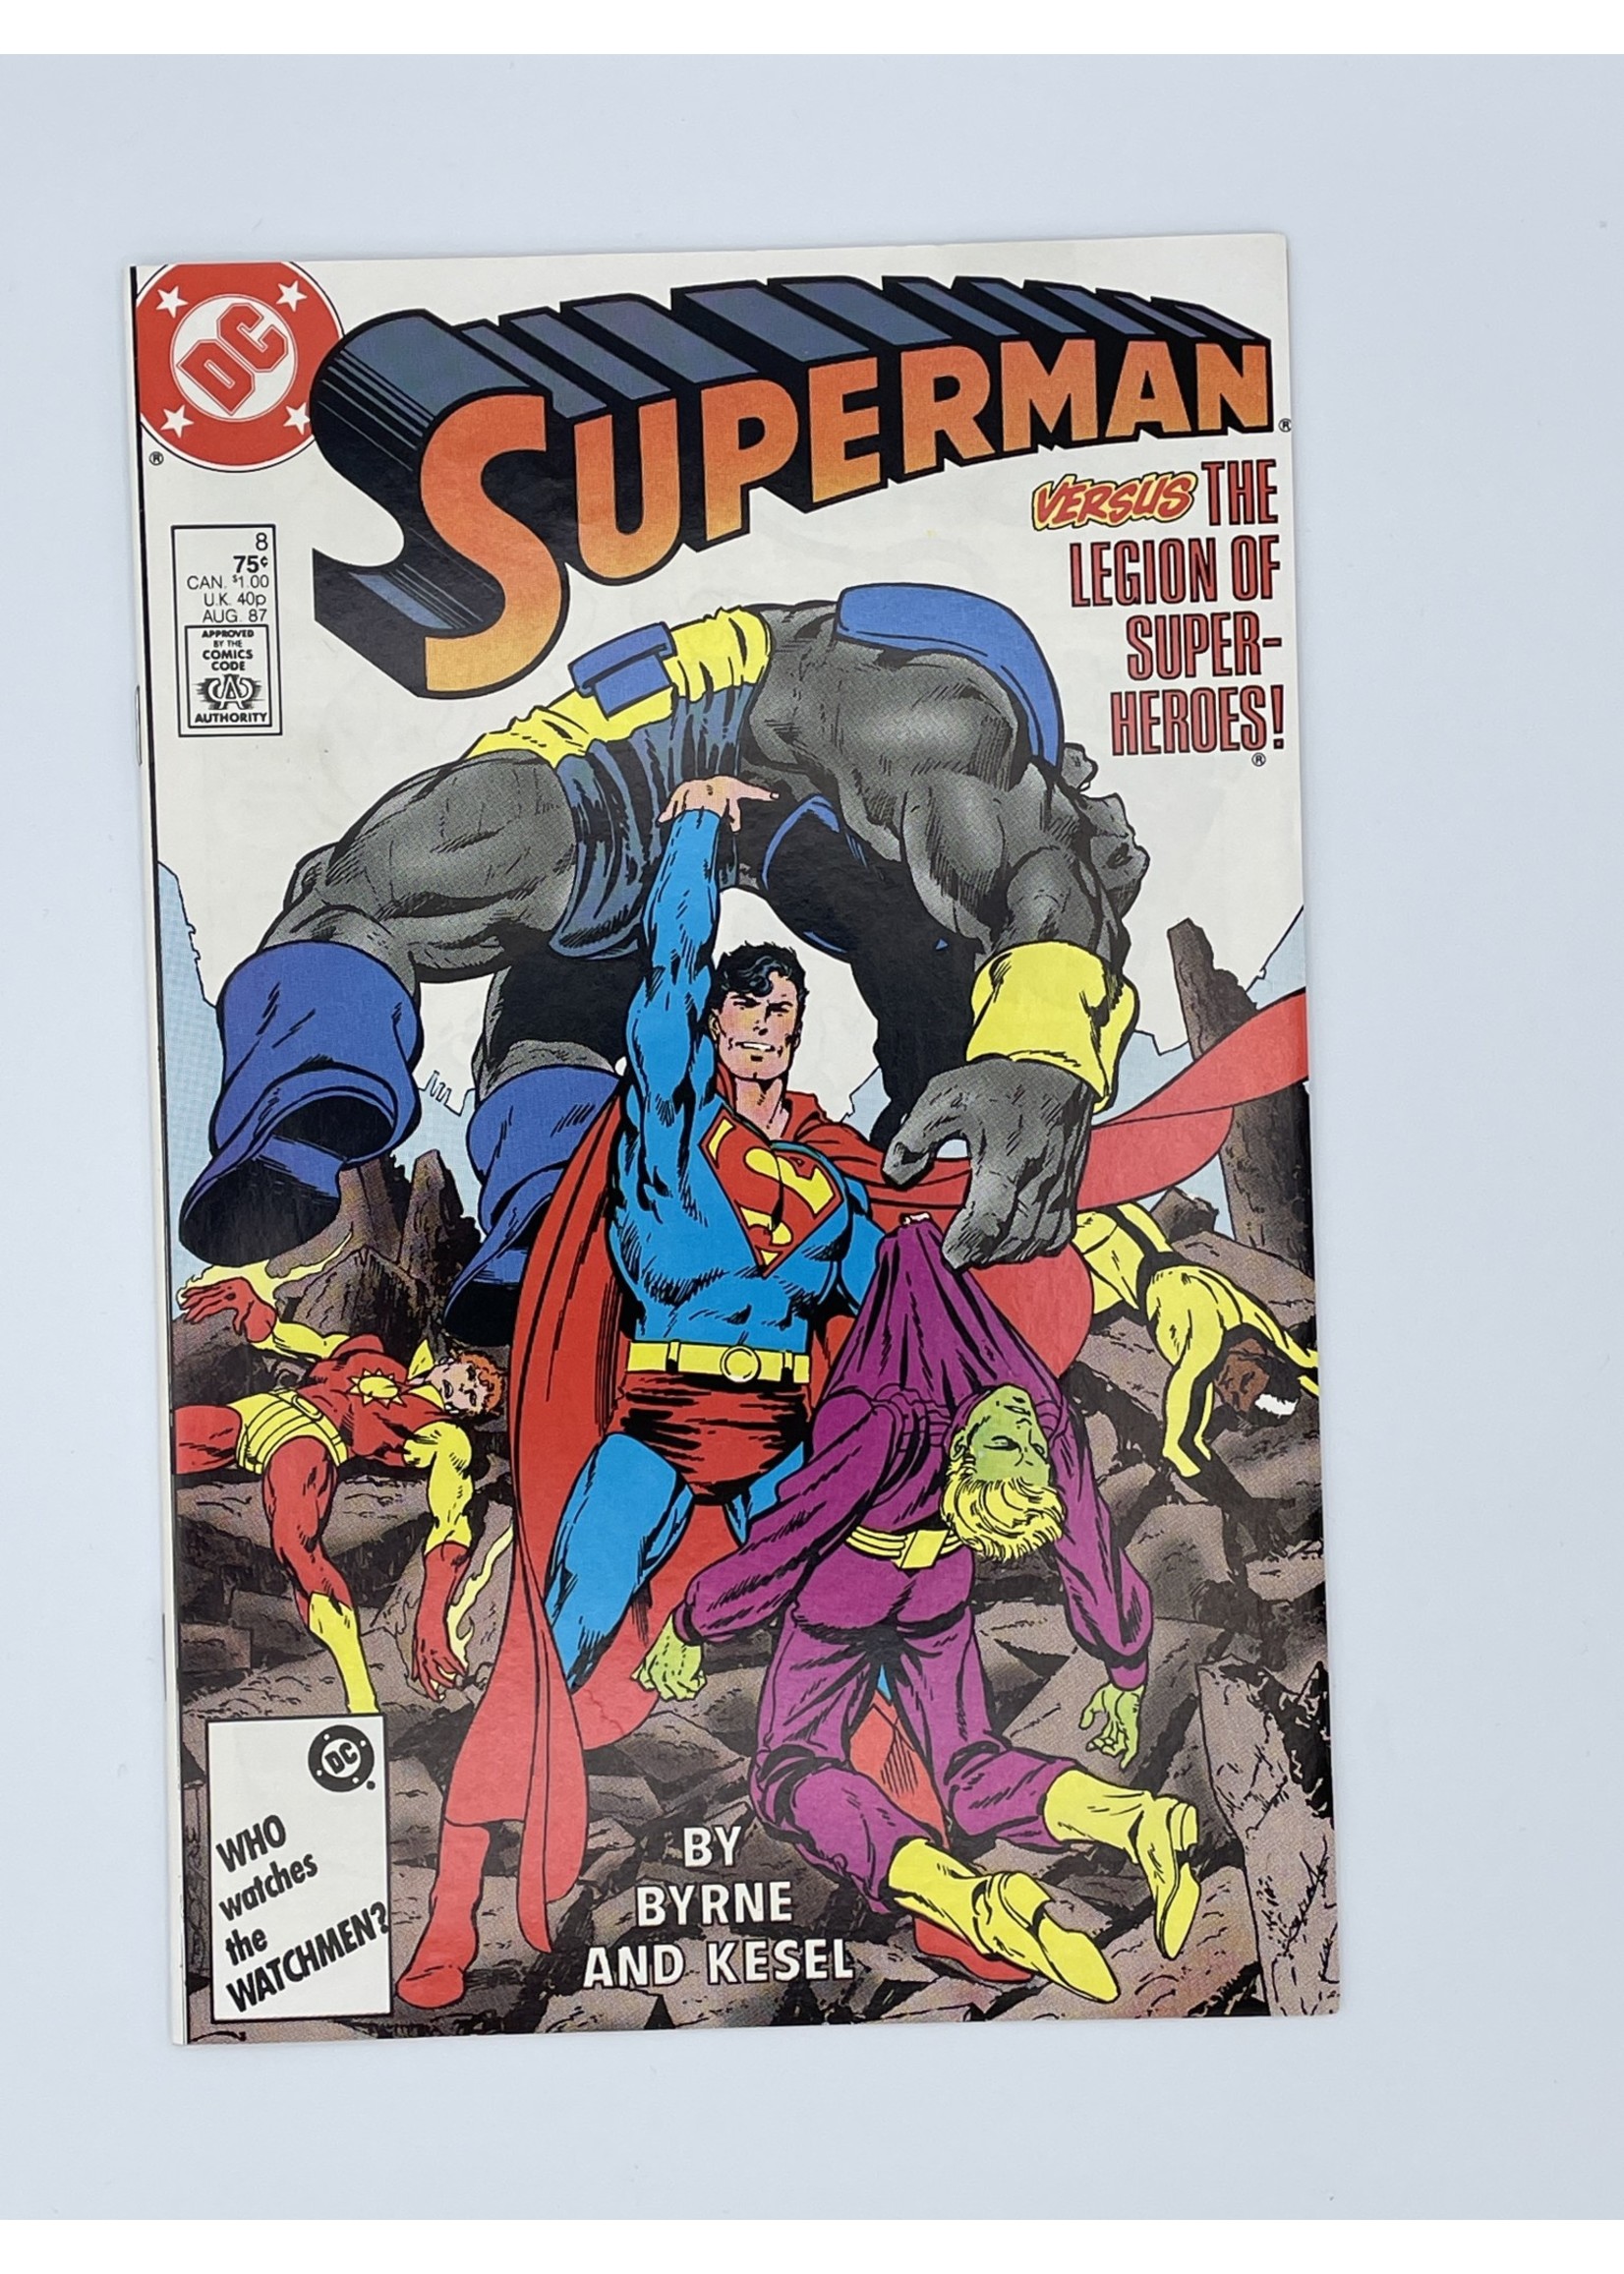 DC Superman #8 Dc August 1987